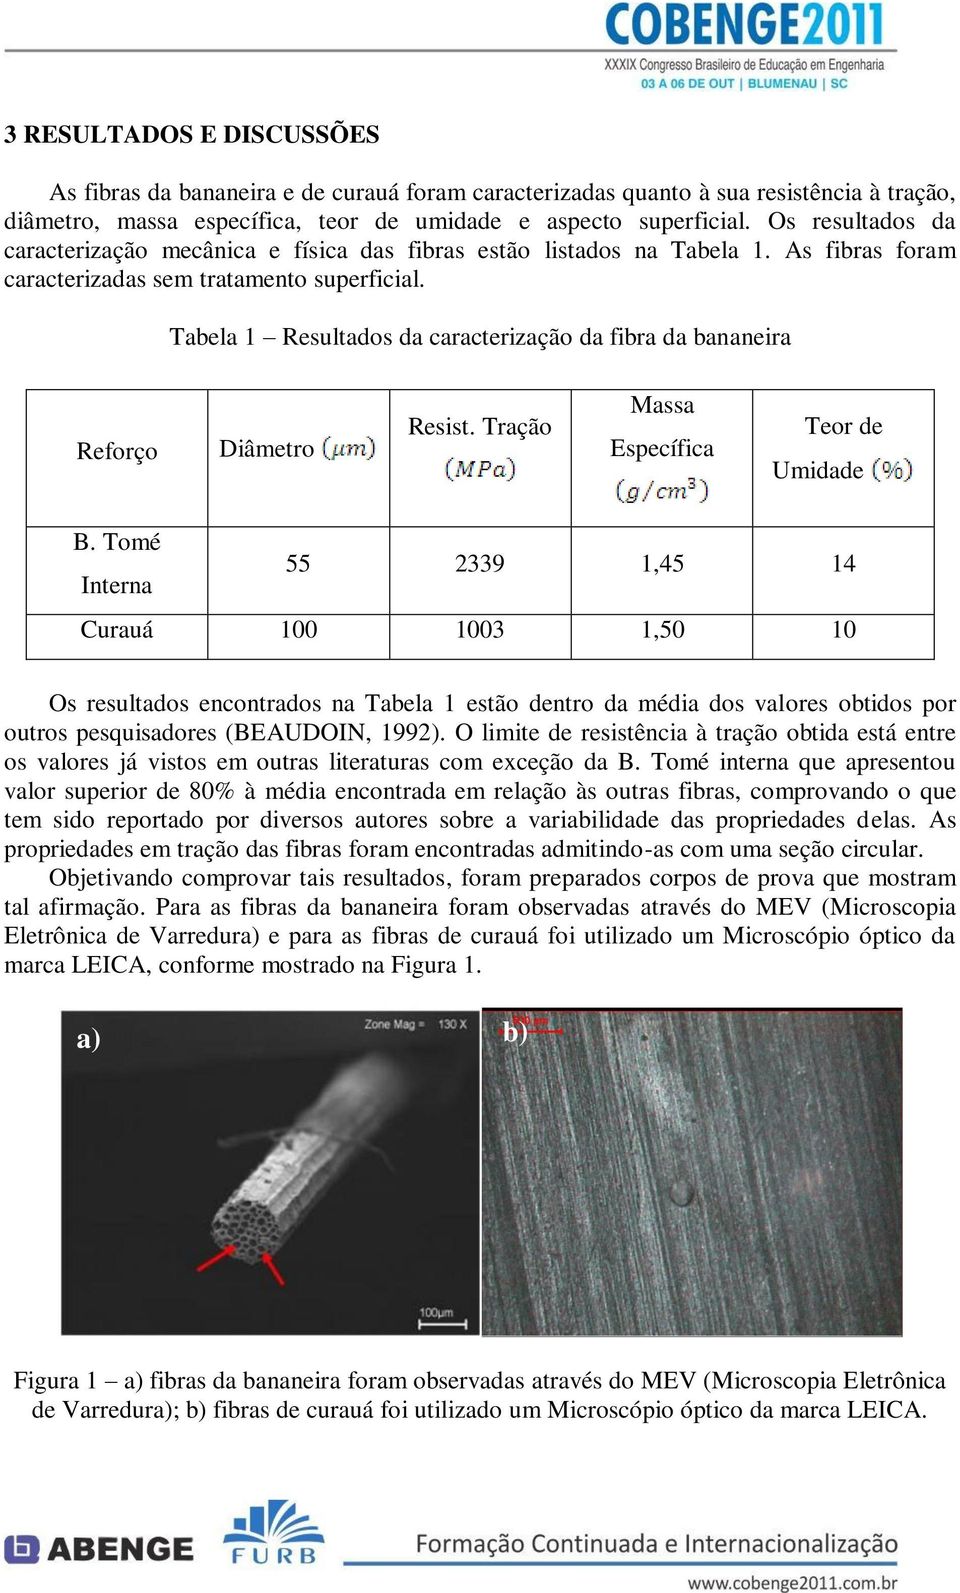 Tabela 1 Resultados da caracterização da fibra da bananeira Reforço Diâmetro Resist. Tração Massa Específica Teor de Umidade B.